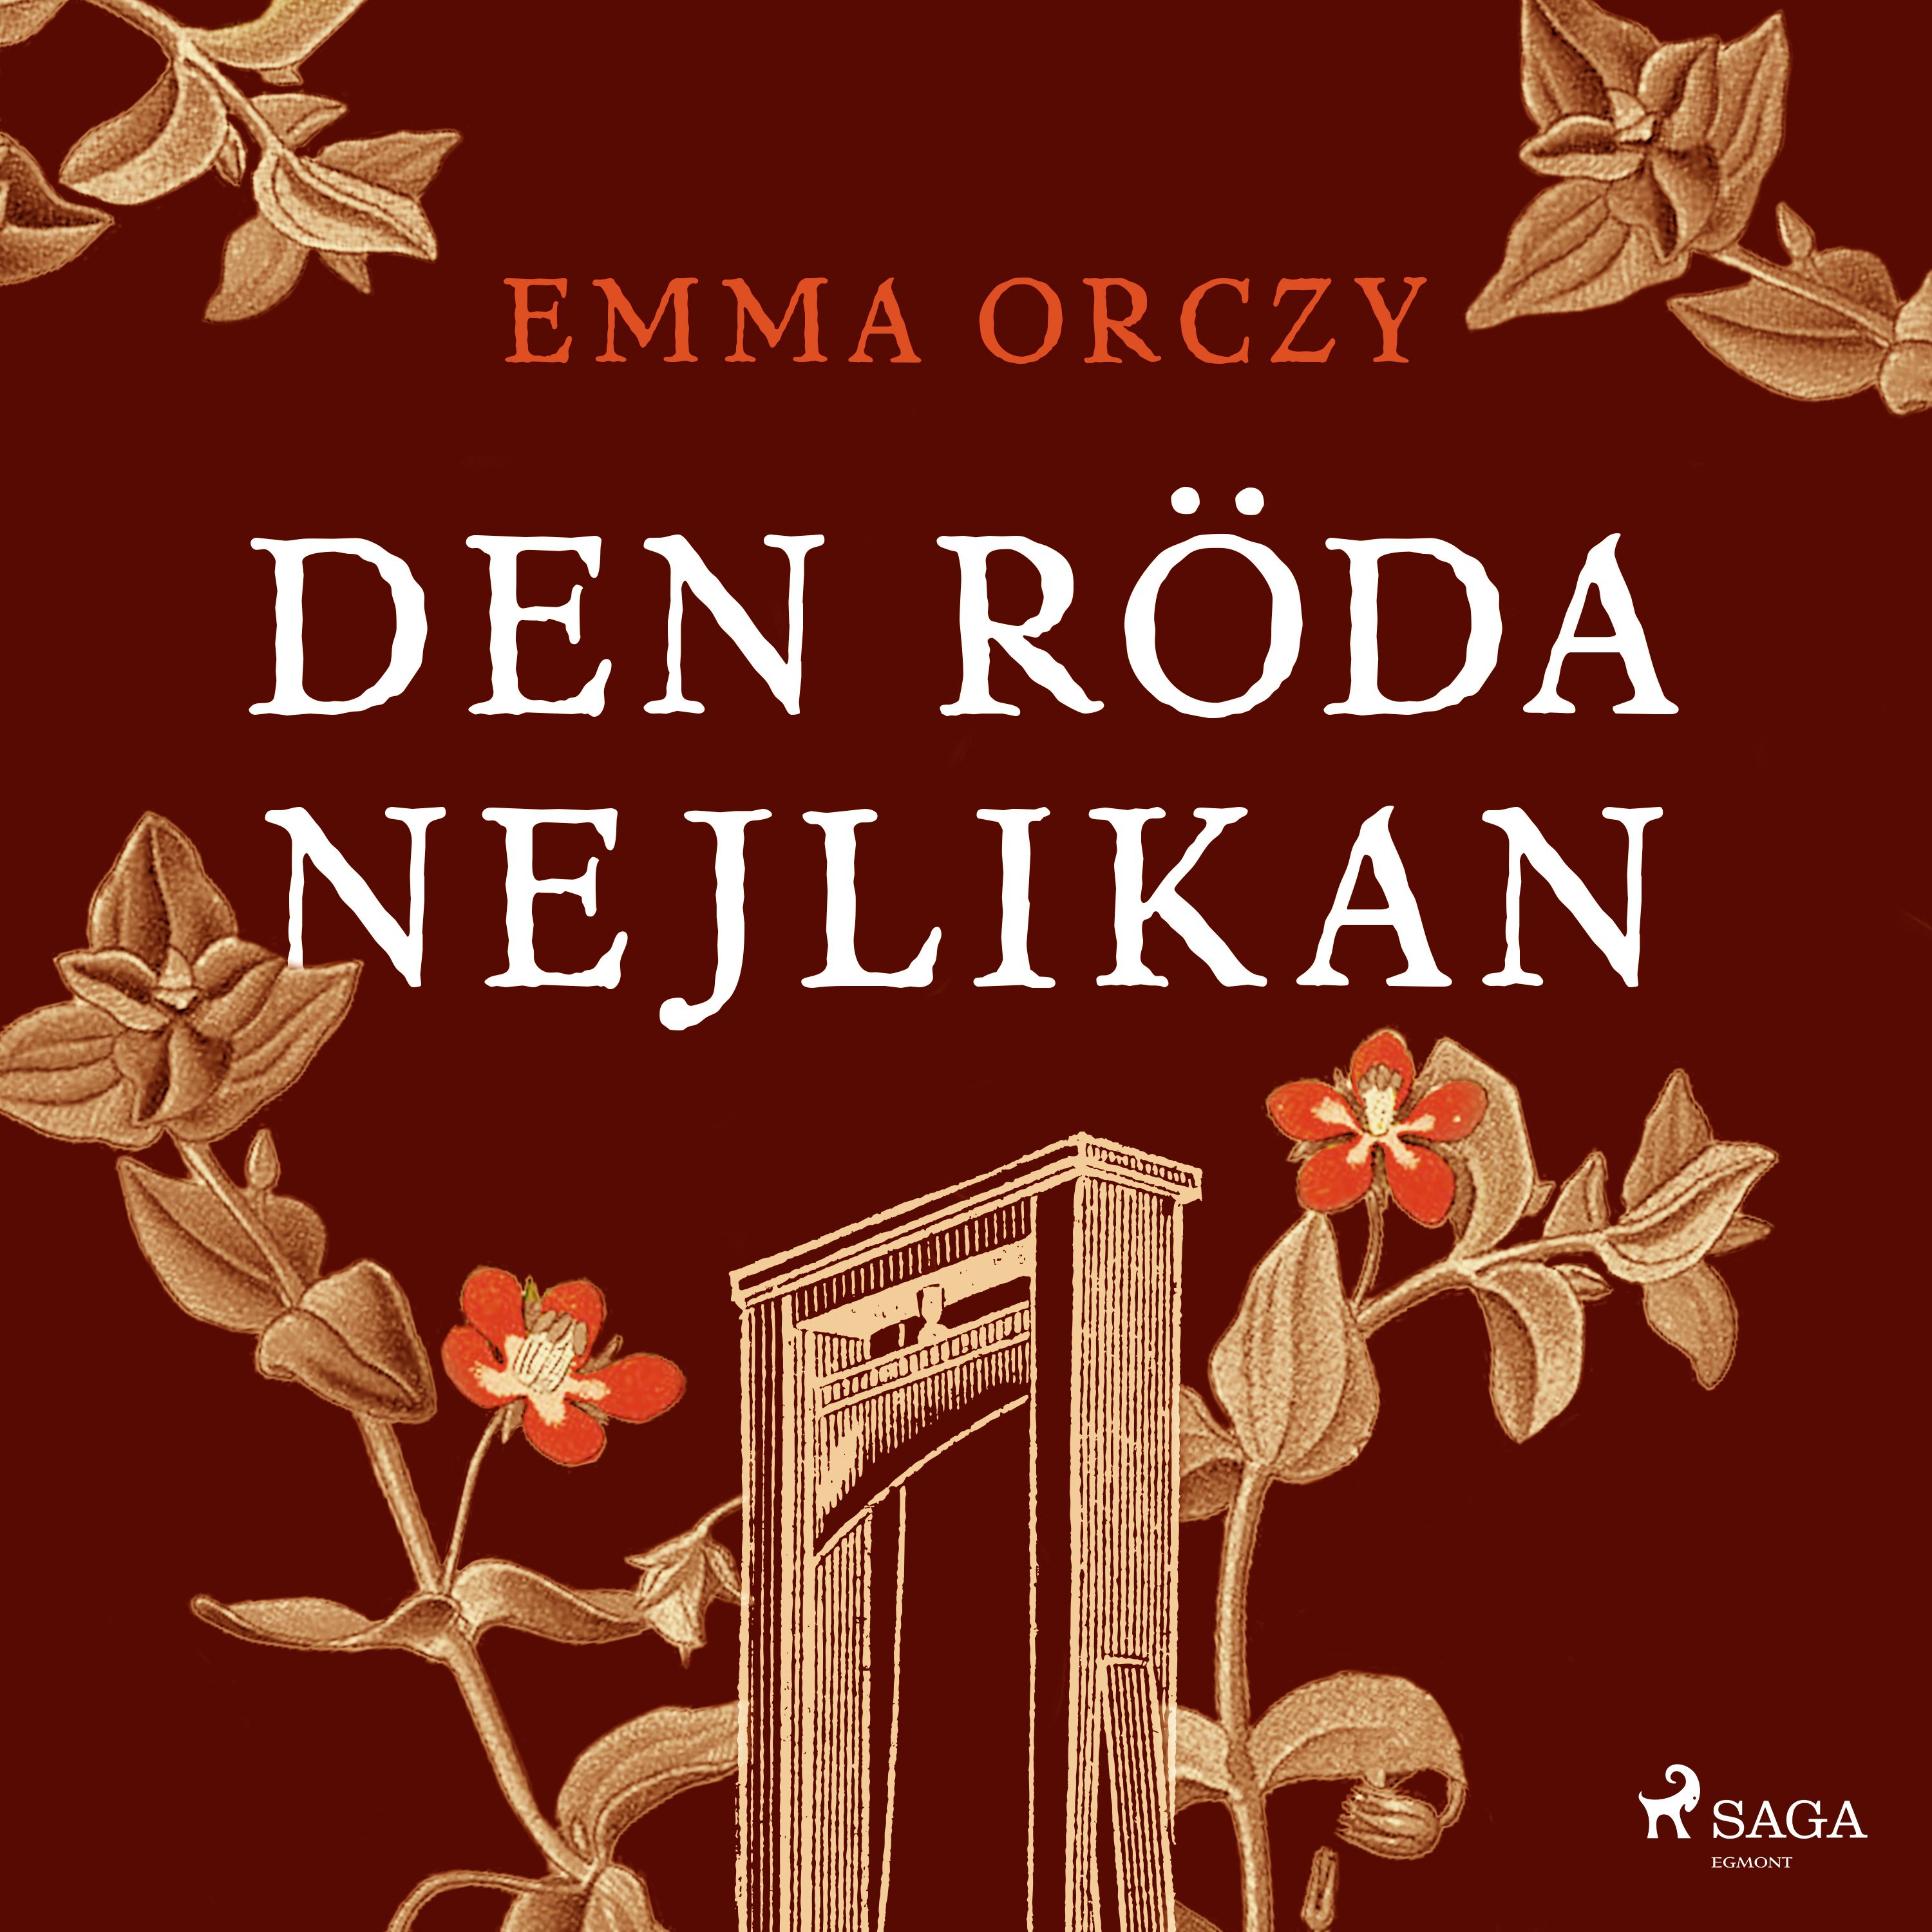 Den röda nejlikan, ljudbok av Emma Orczy